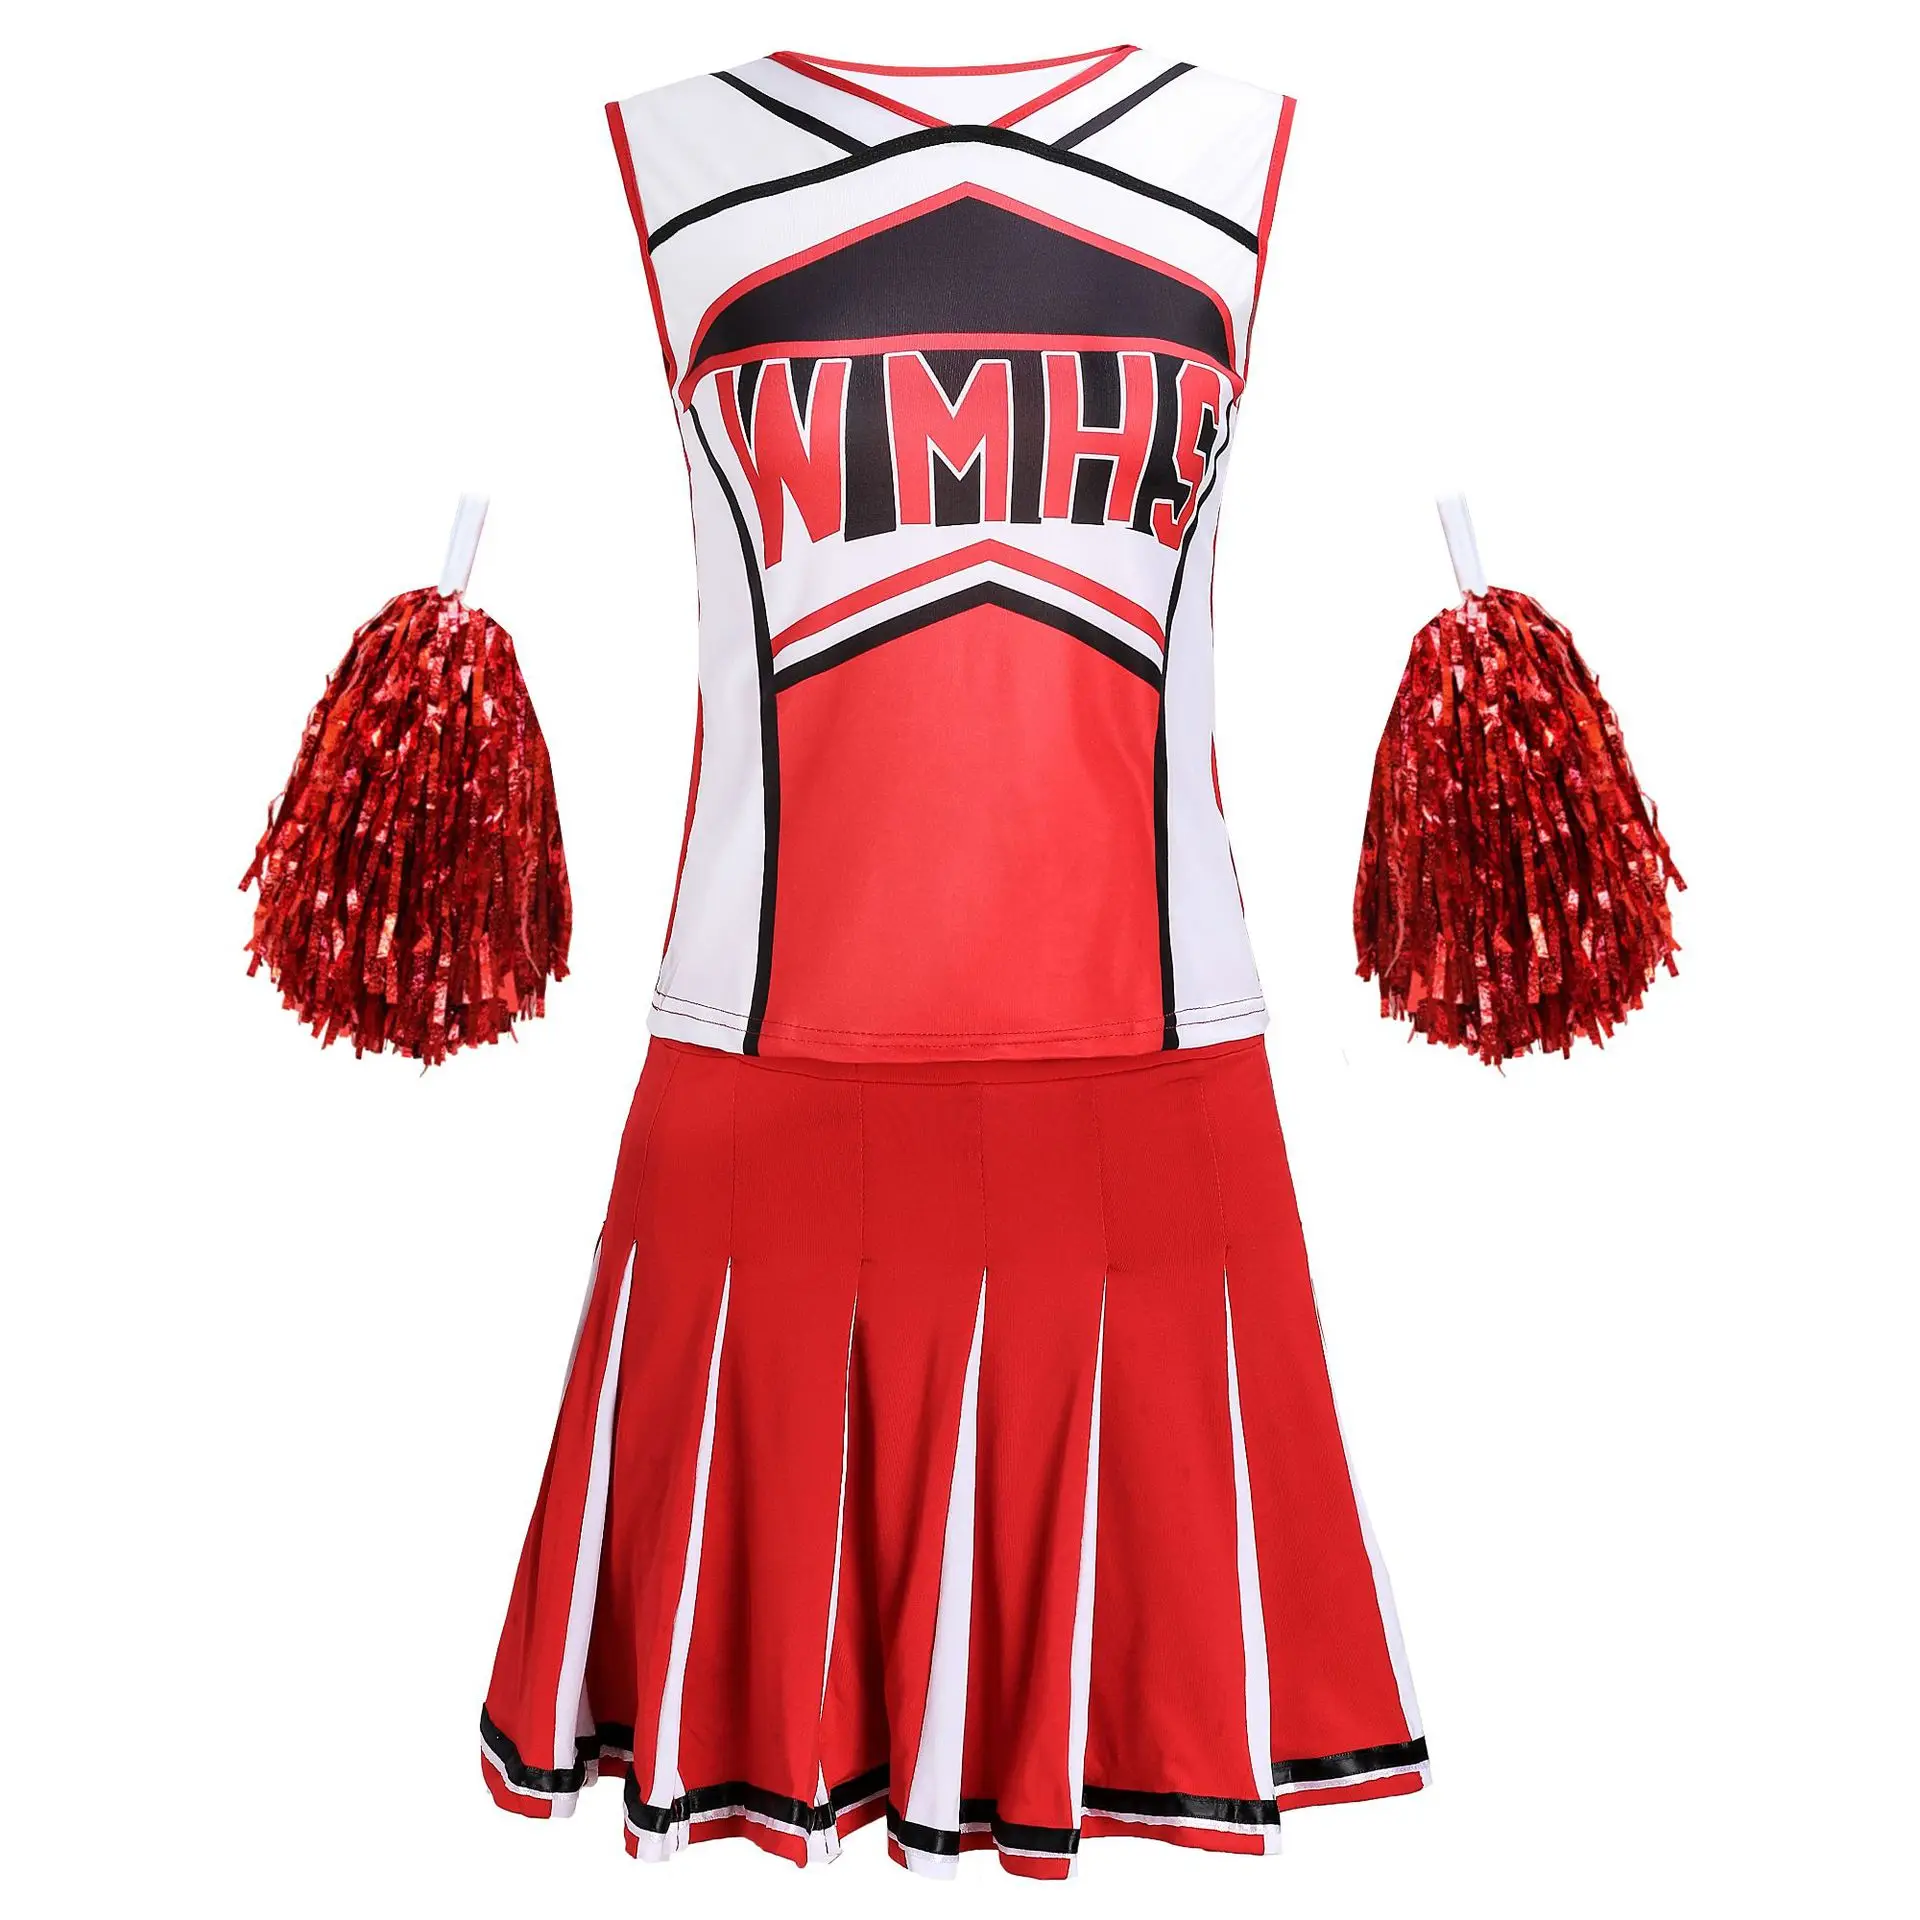 Adult Women's Cheerleader Suit Pompoms Uniform Schoolgirl Gleeing Cheer Dance Dress Costume Halloween Lingerie Cosplay Outfit